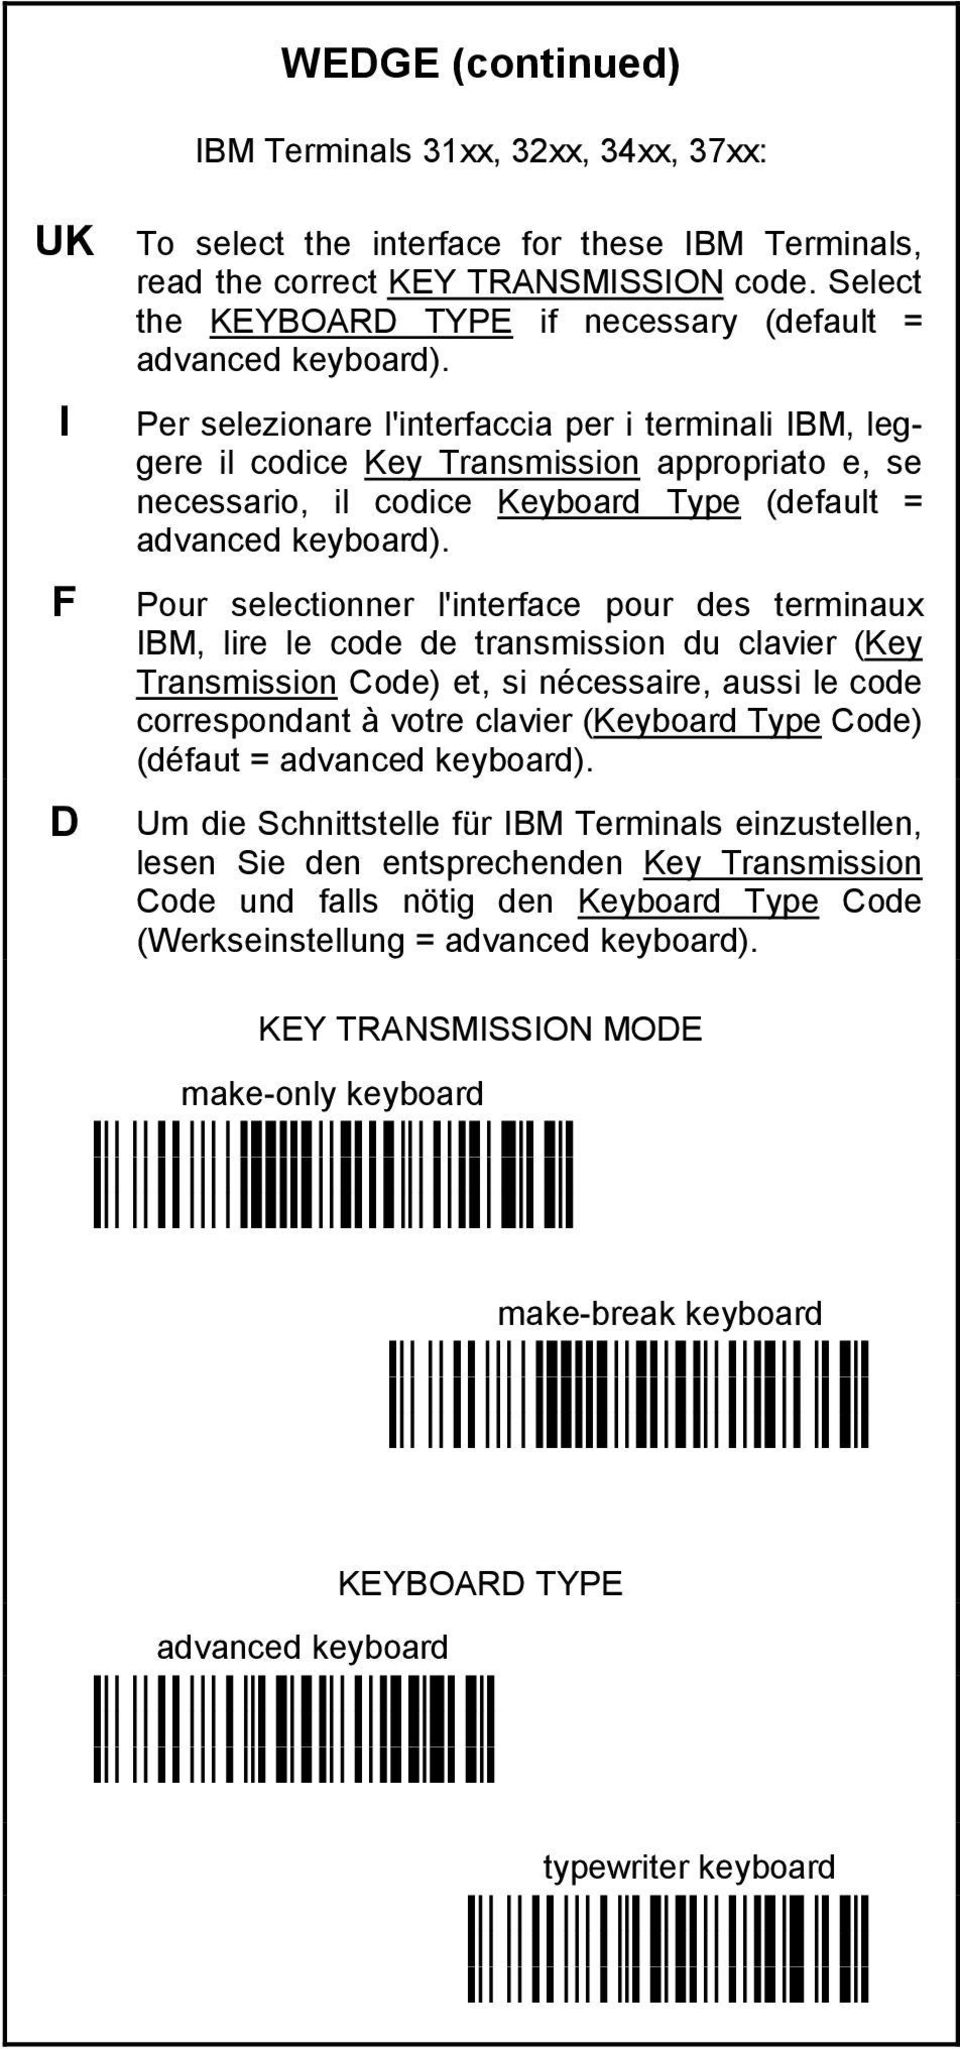 Per selezionare l'interfaccia per i terminali IBM, leggere il codice Key Transmission appropriato e, se necessario, il codice Keyboard Type (default = advanced keyboard).